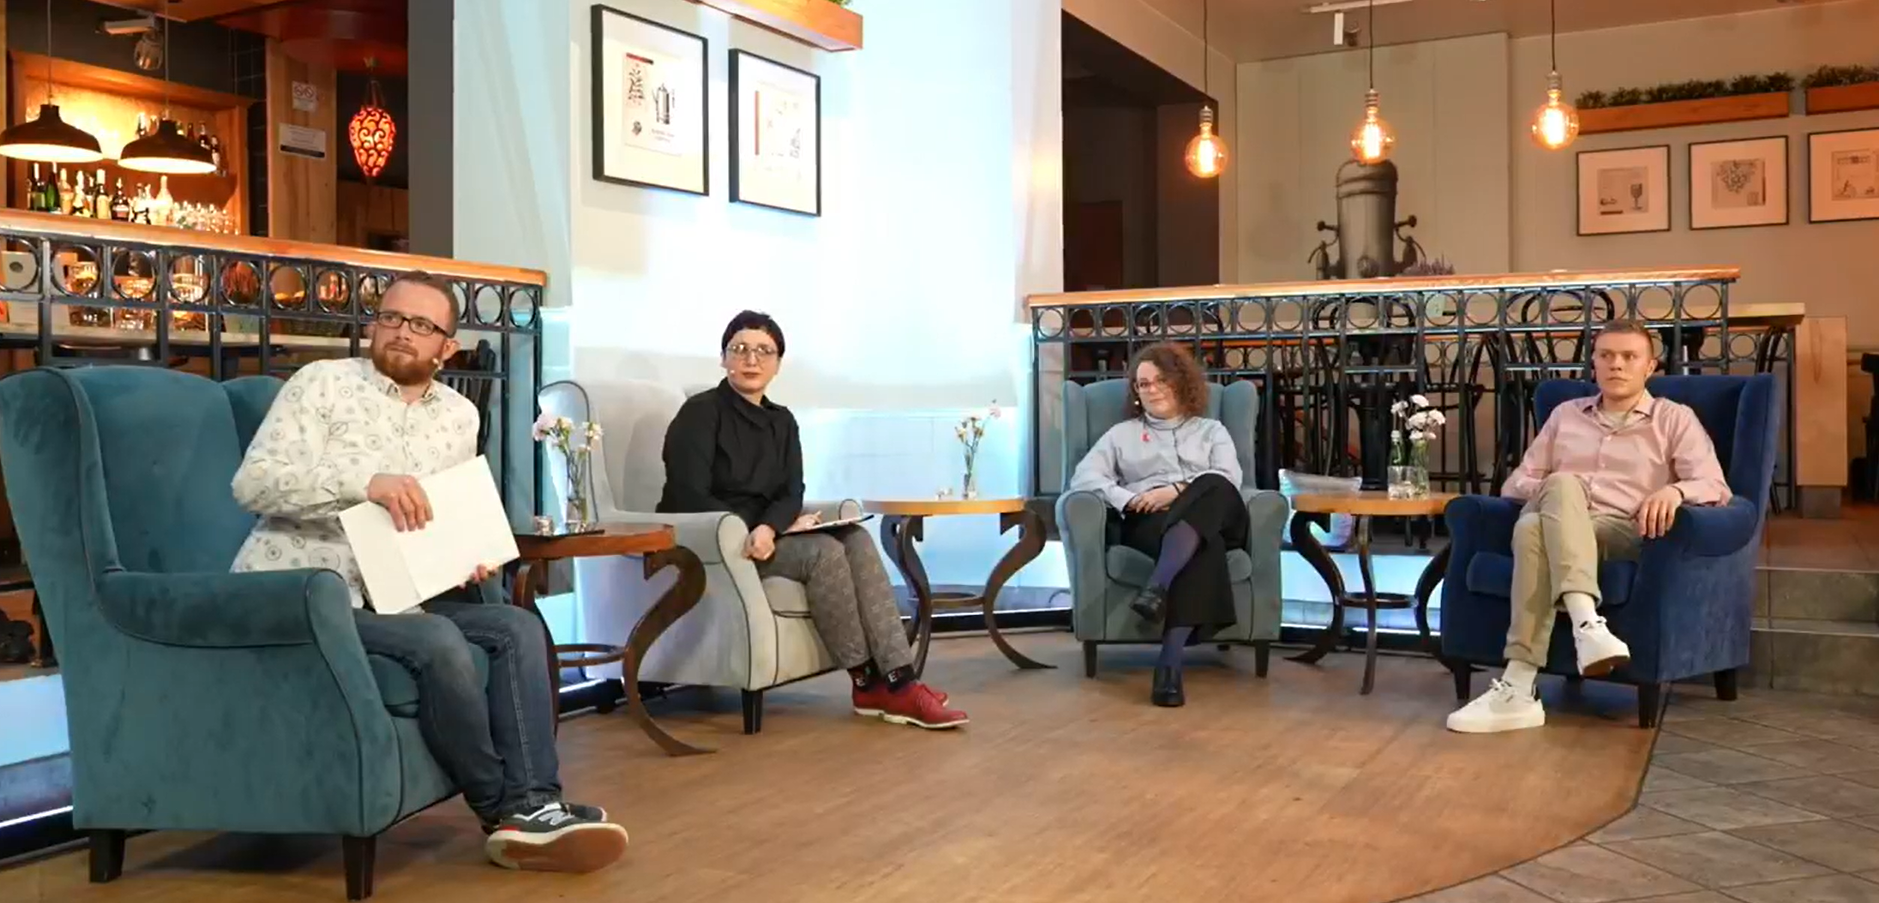 Goście debaty "Jak żyć (lepiej) w Śródmieściu" w Symfonia Cafe Club podczas rozmowy